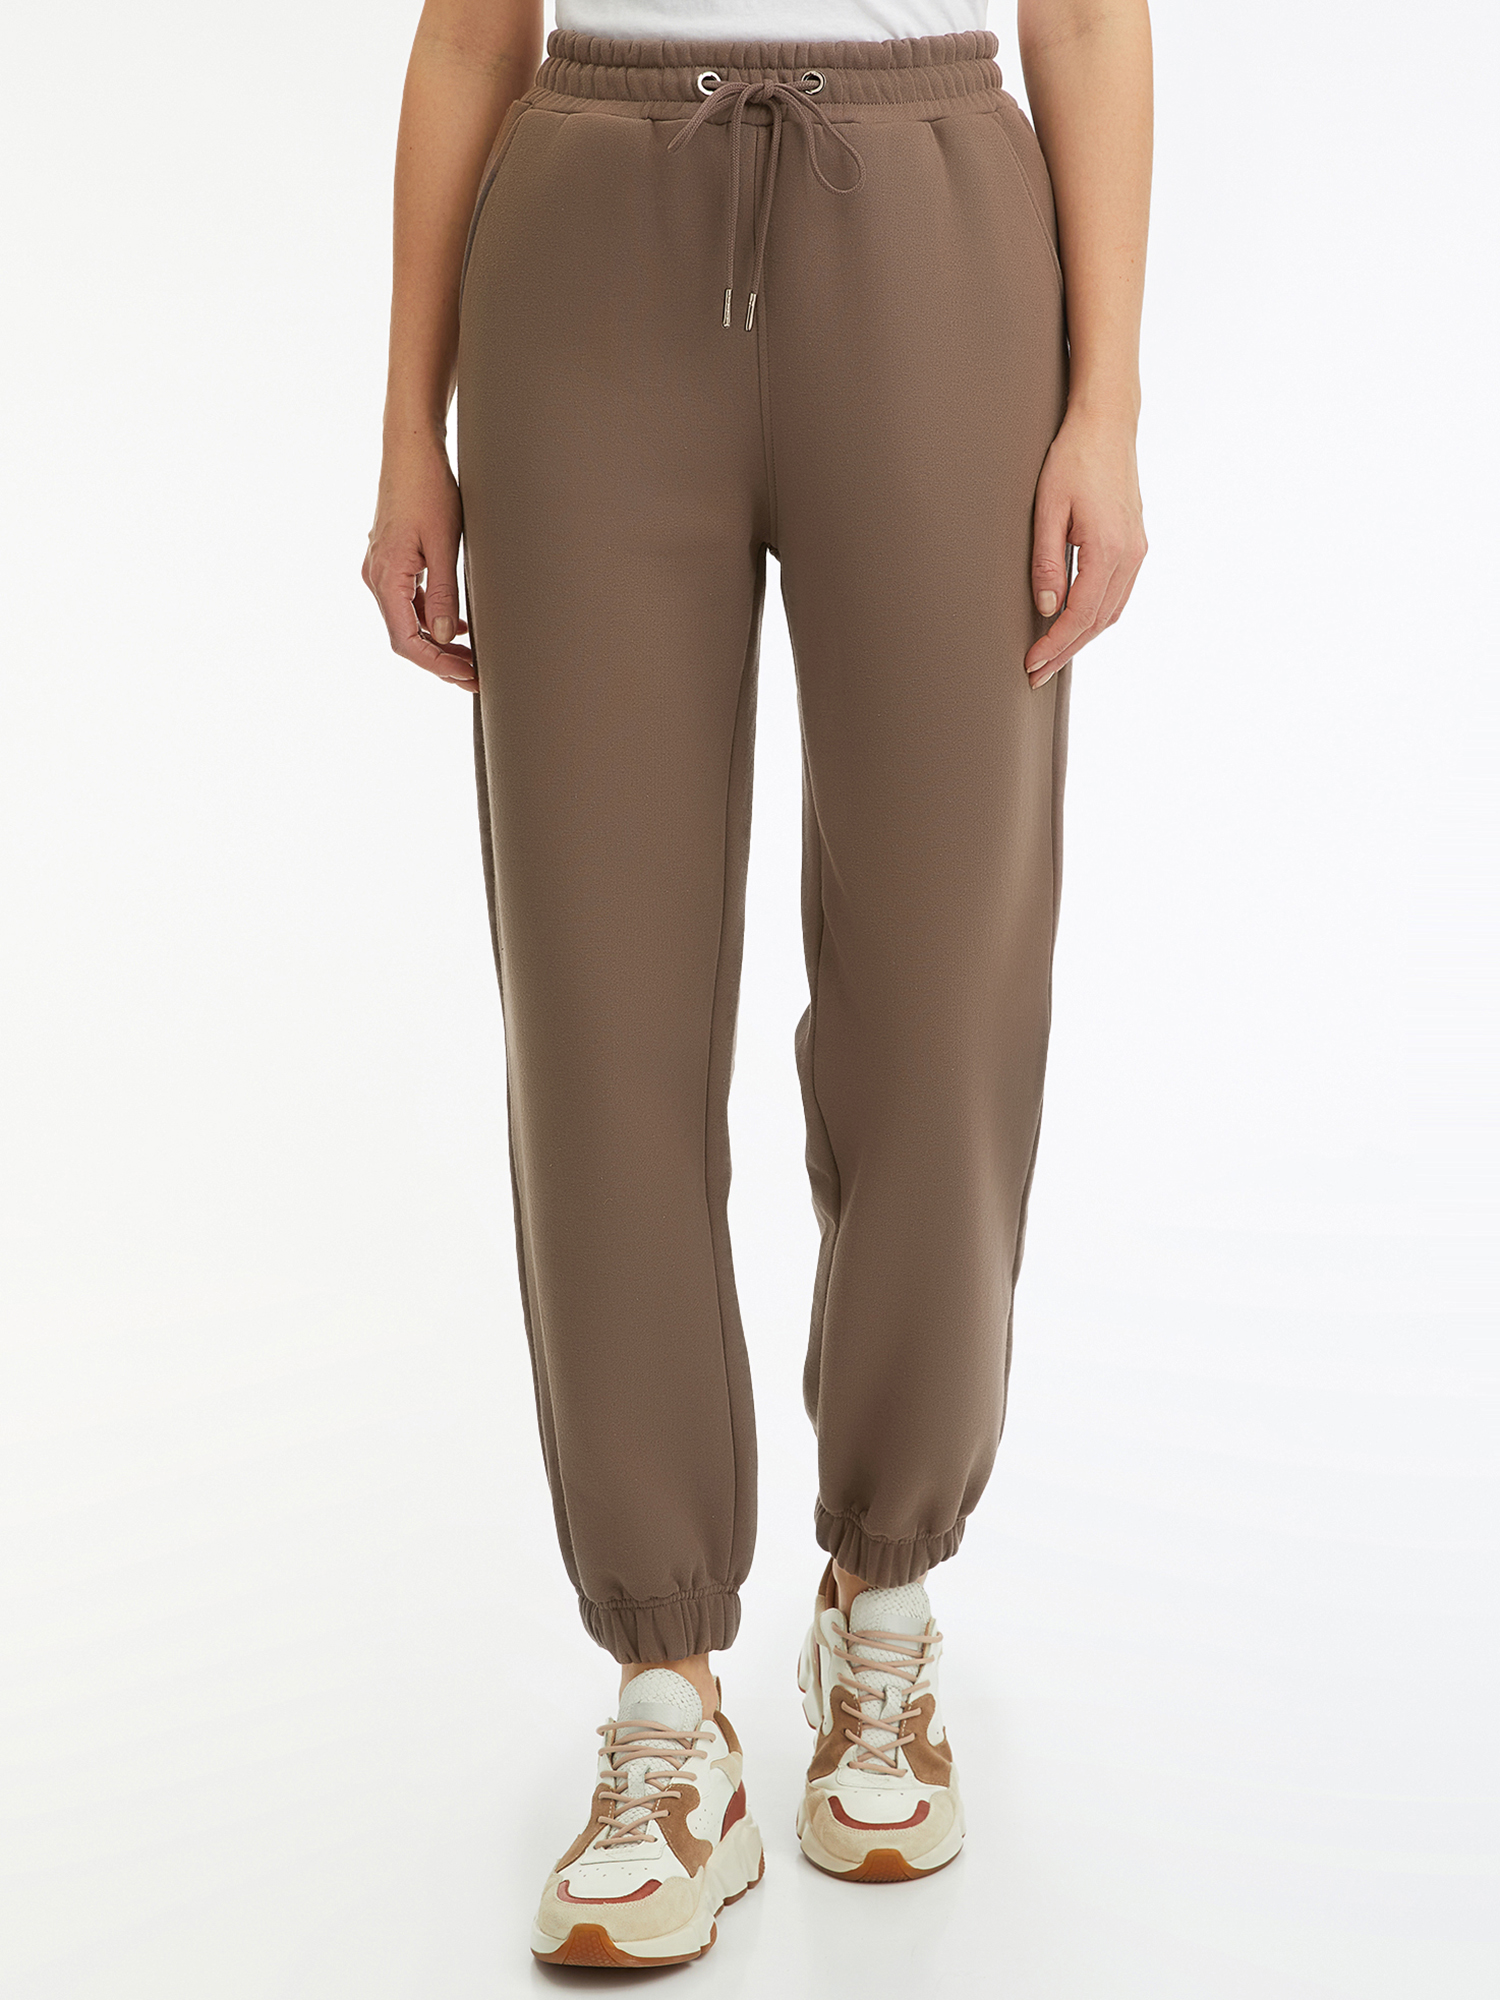 Спортивные брюки женские oodji 16701086-1 коричневые XL